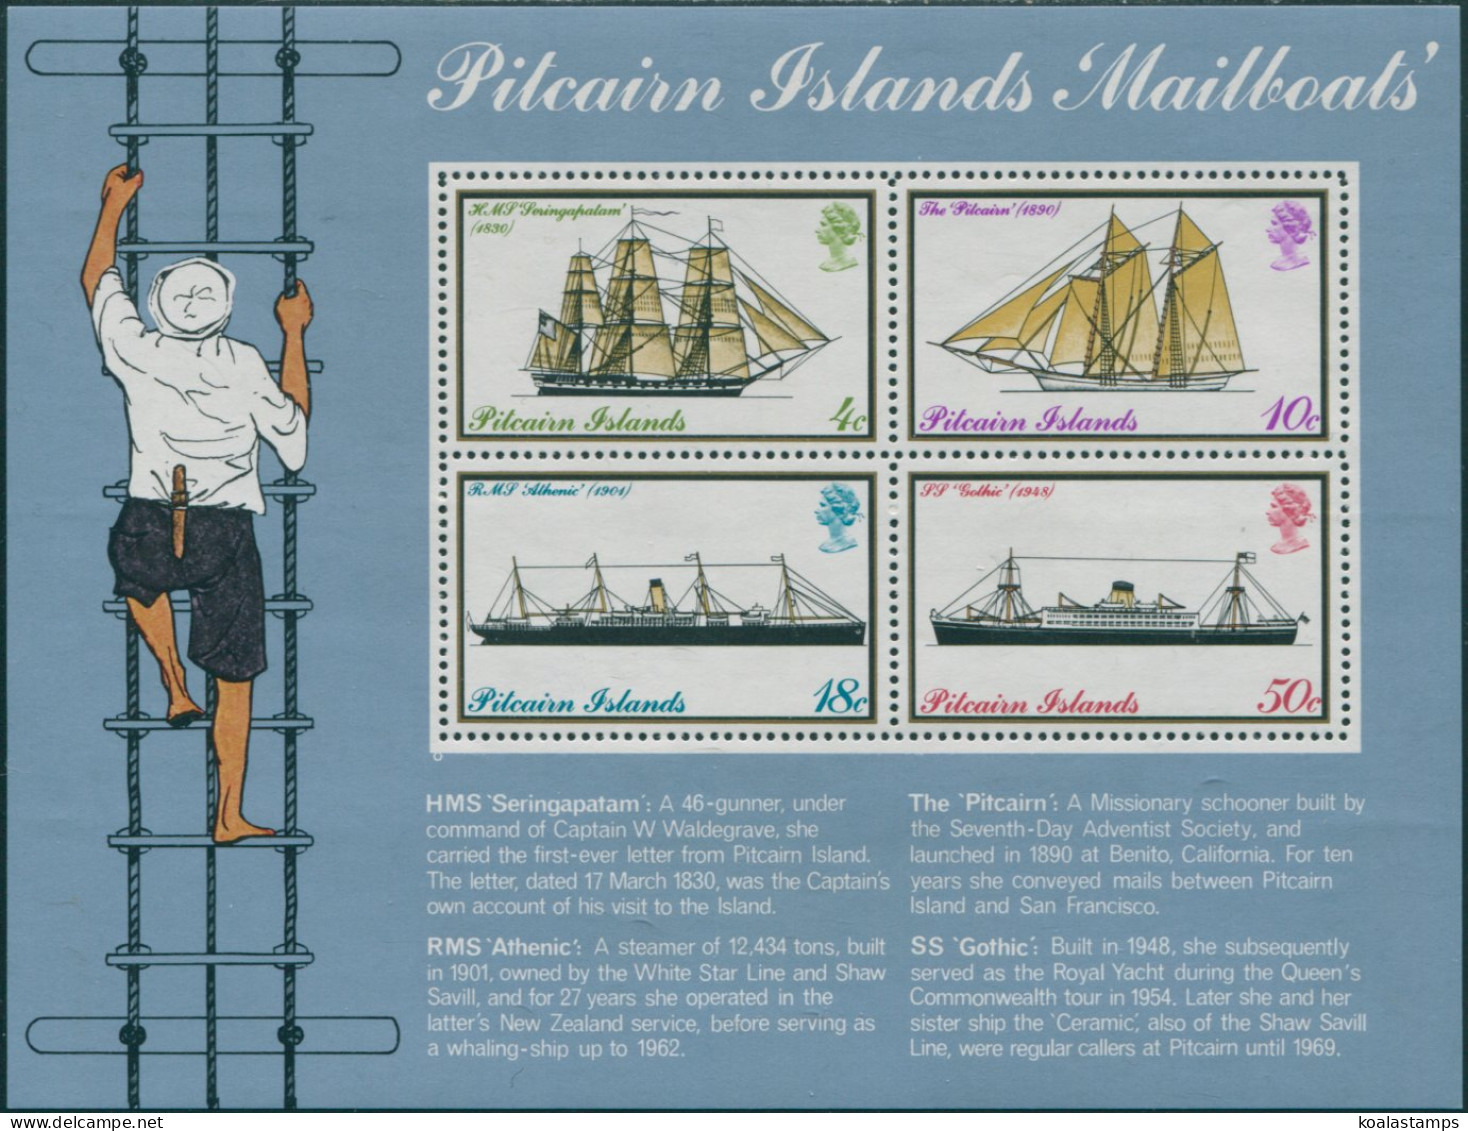 Pitcairn Islands 1975 SG161 Mailboats MS MNH - Pitcairn Islands